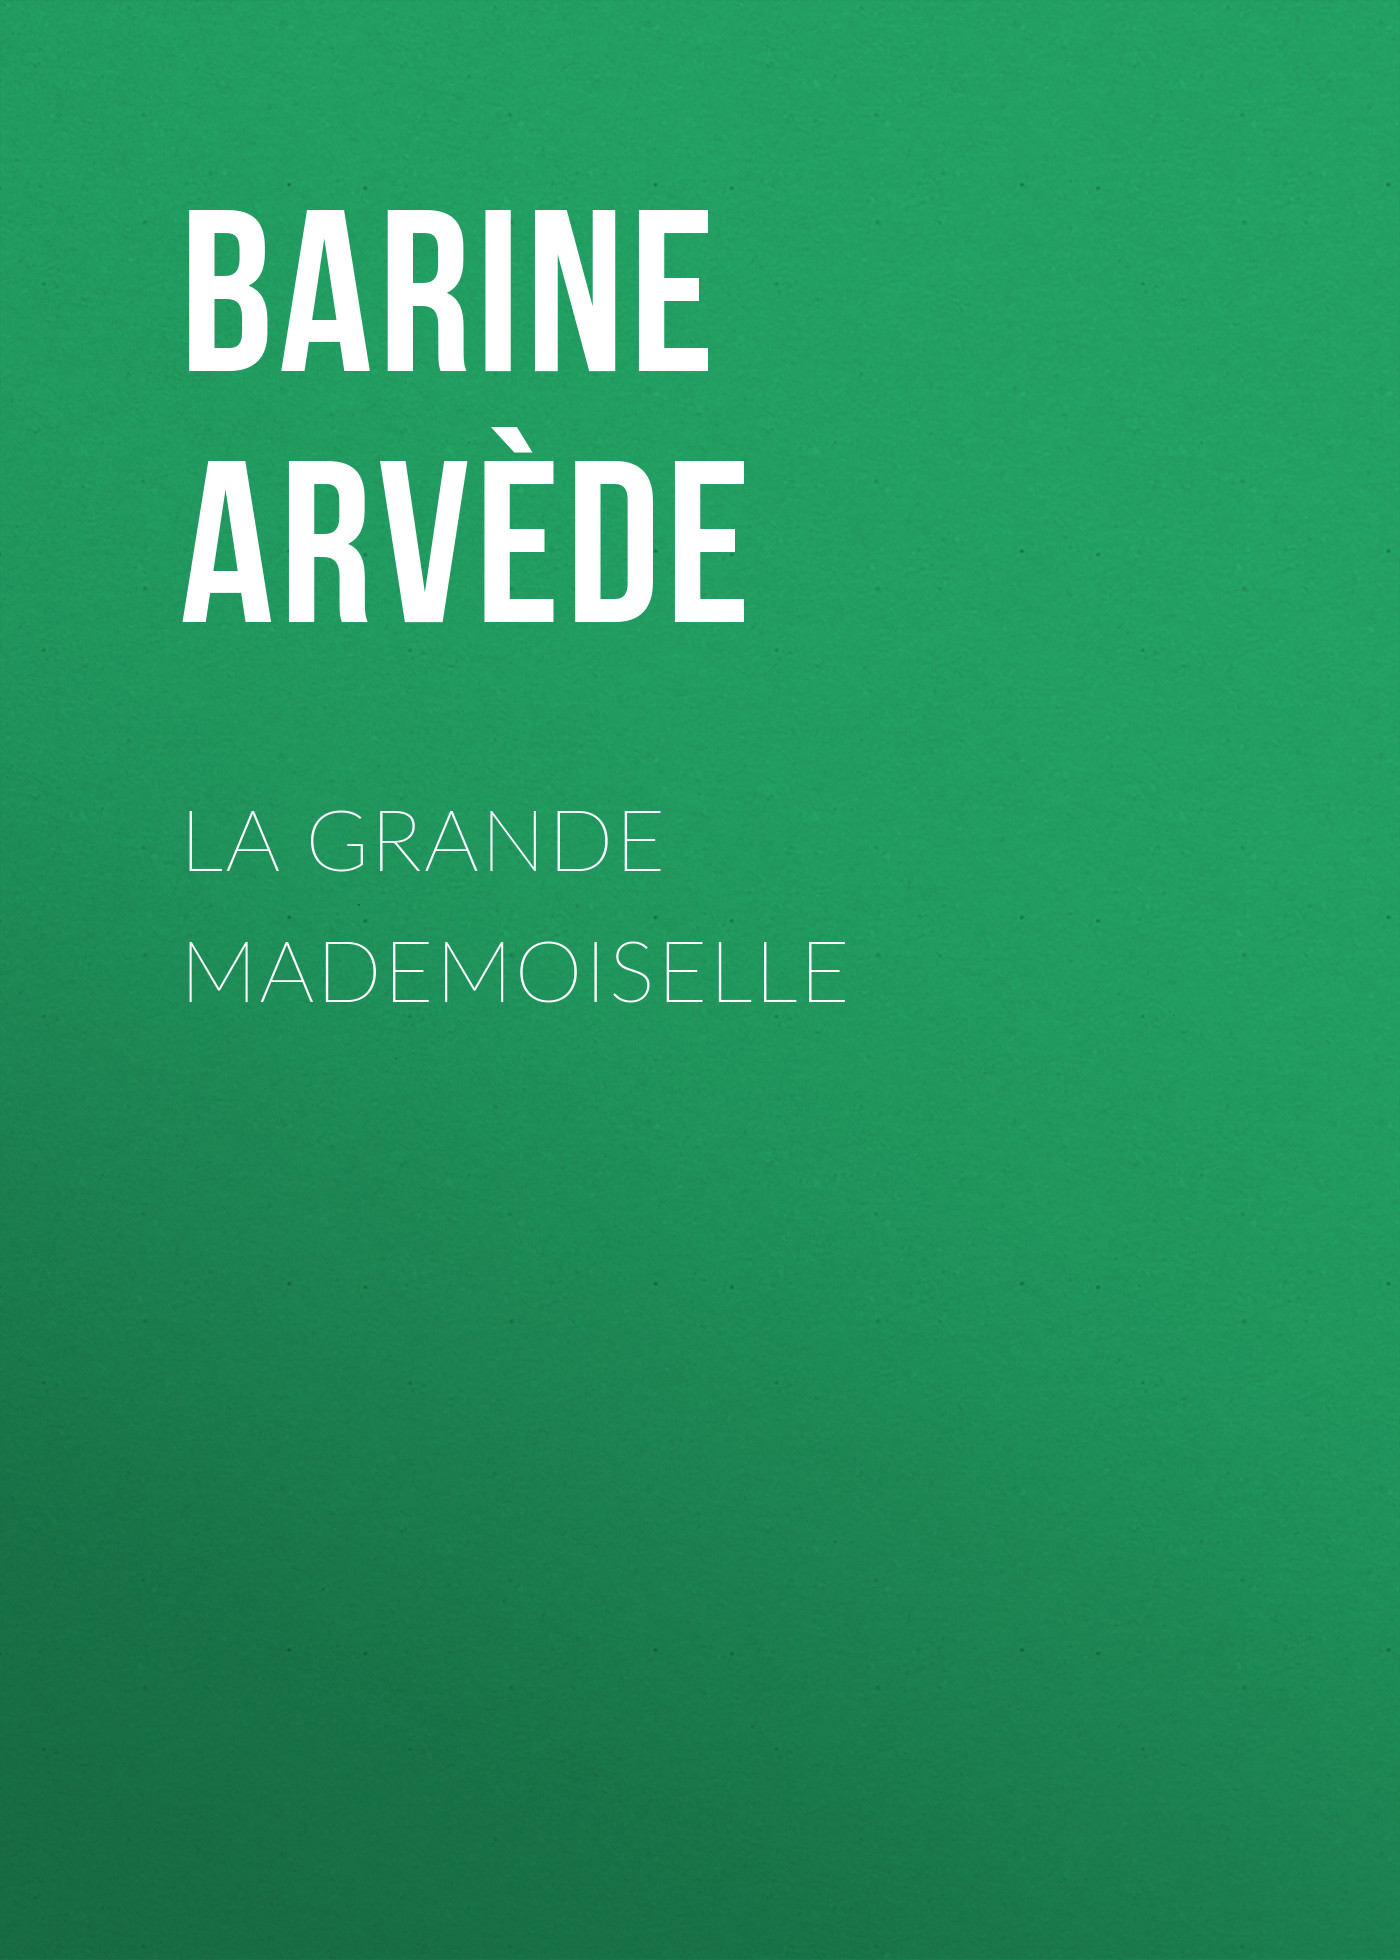 Книга La Grande Mademoiselle из серии , созданная Arvède Barine, может относится к жанру Зарубежная старинная литература, Зарубежная классика. Стоимость электронной книги La Grande Mademoiselle с идентификатором 24172540 составляет 0 руб.